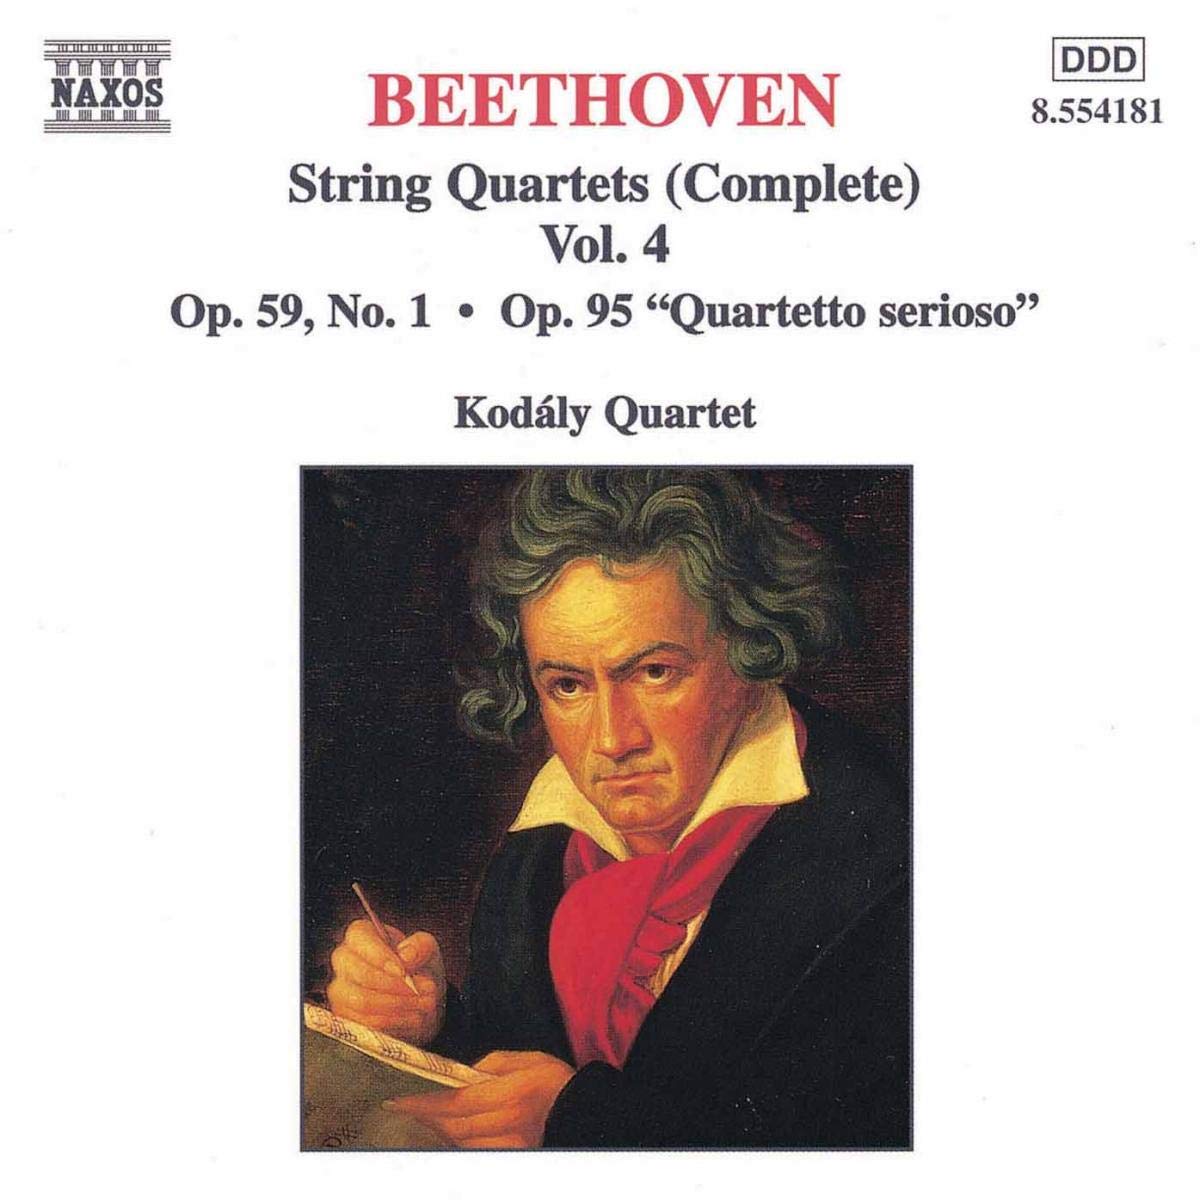 BEETHOVEN: String Quartets